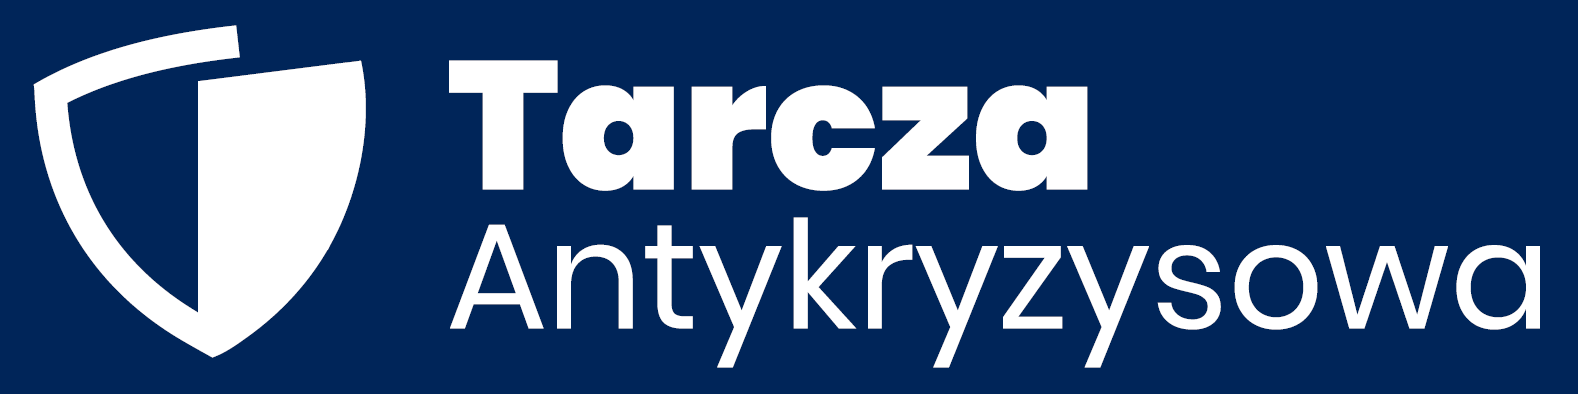 logo Tarcza Antykryzysowa - ciemne tło